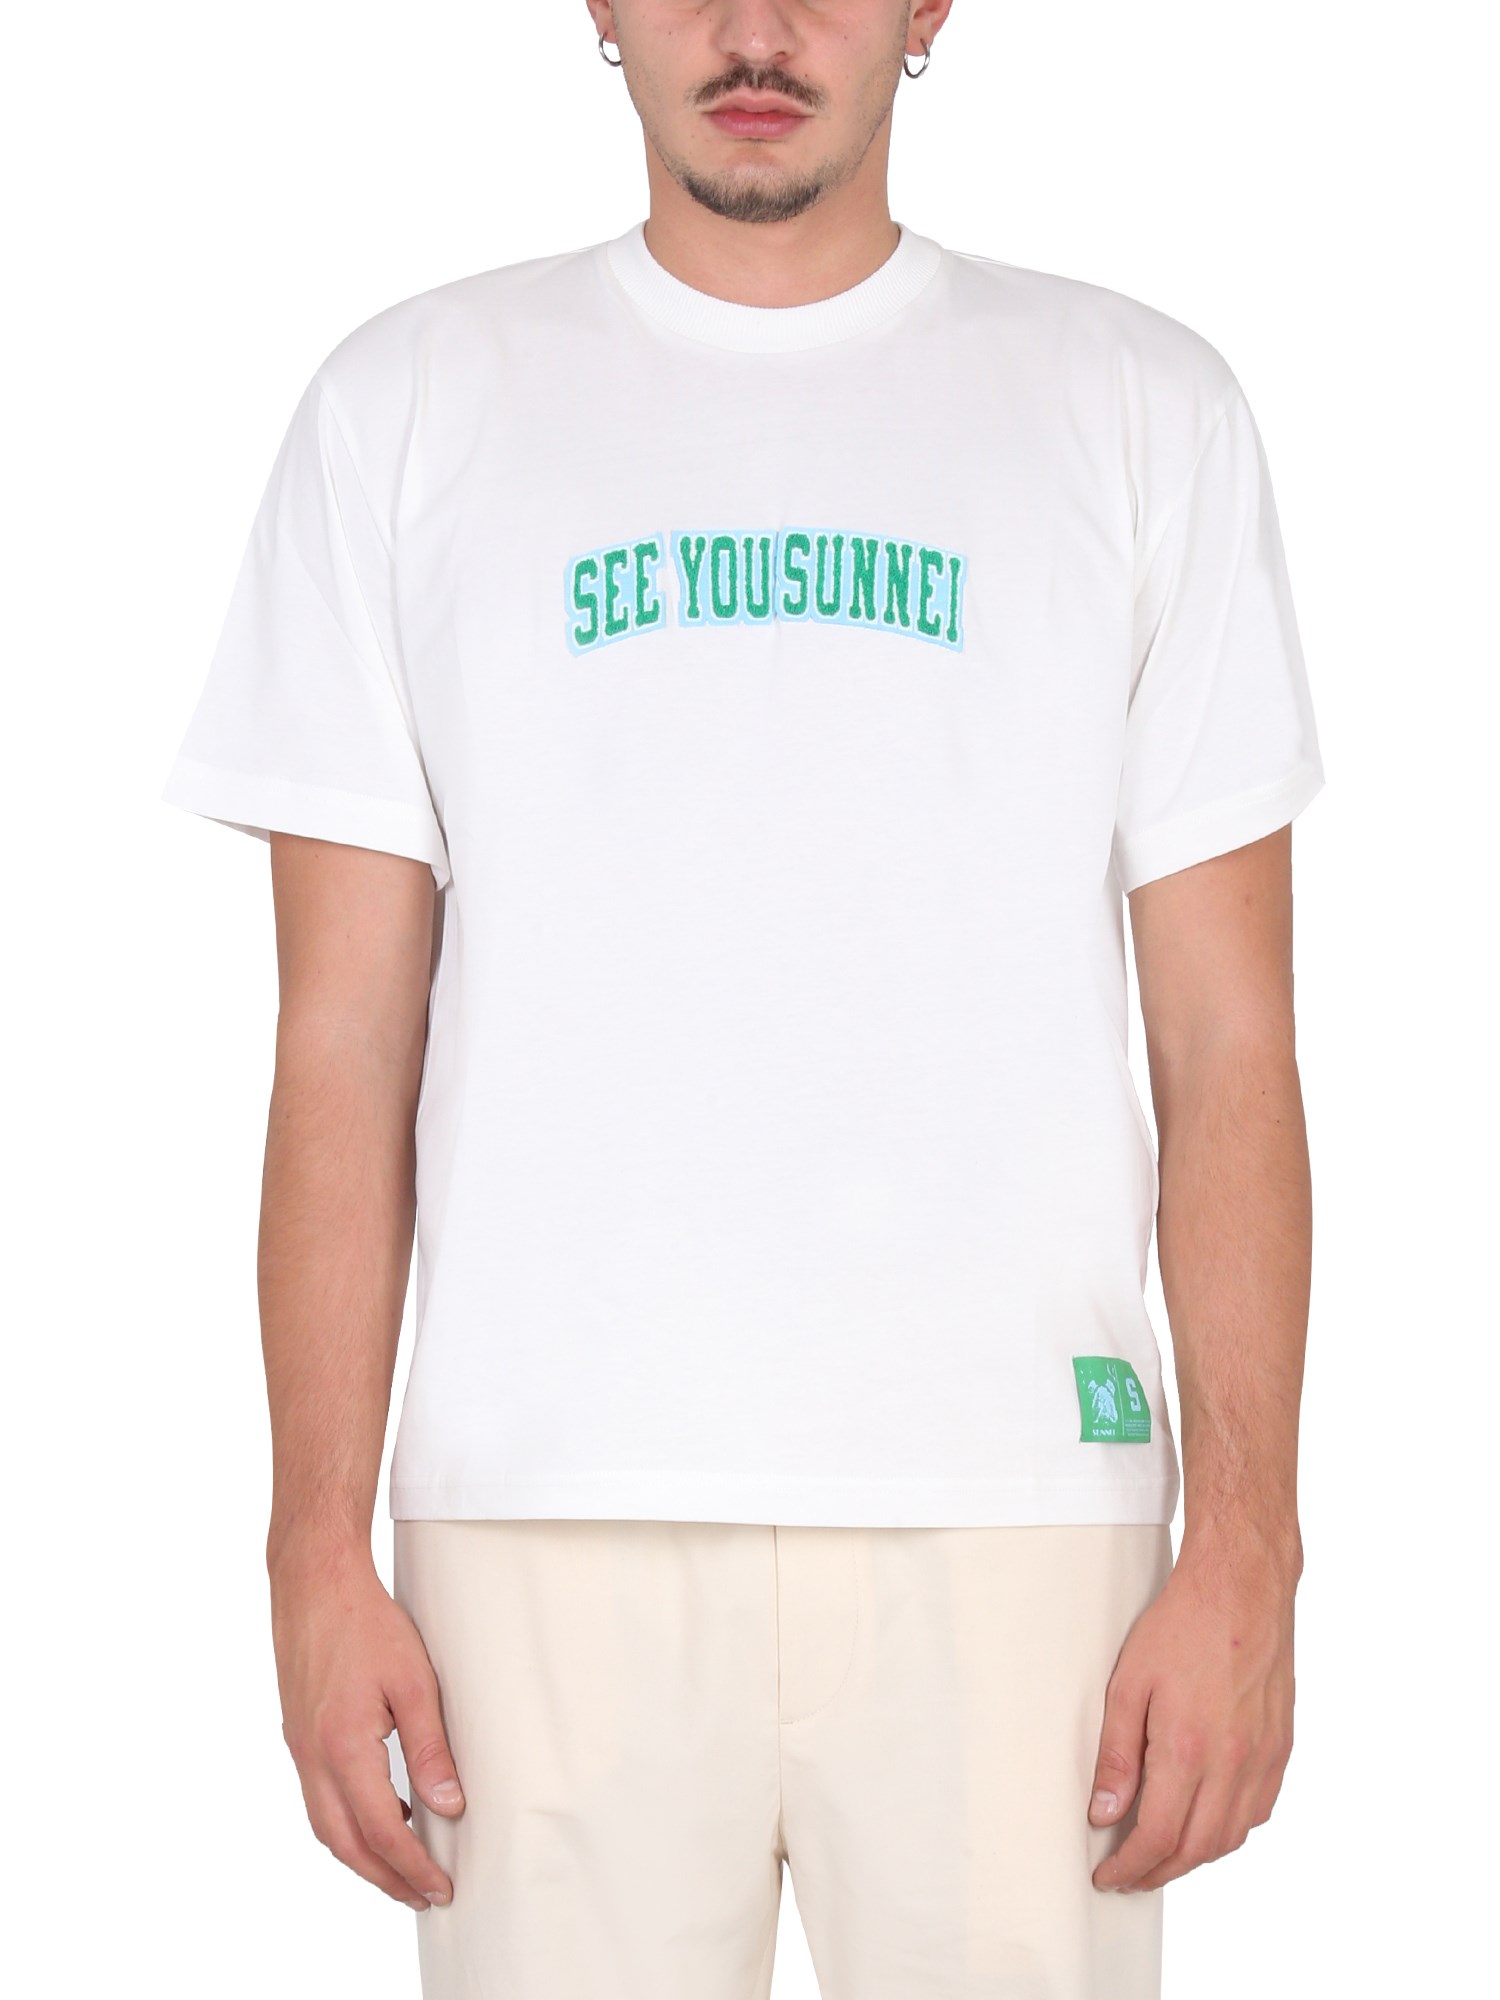 Sunnei sunnei "see you sunnei" t-shirt